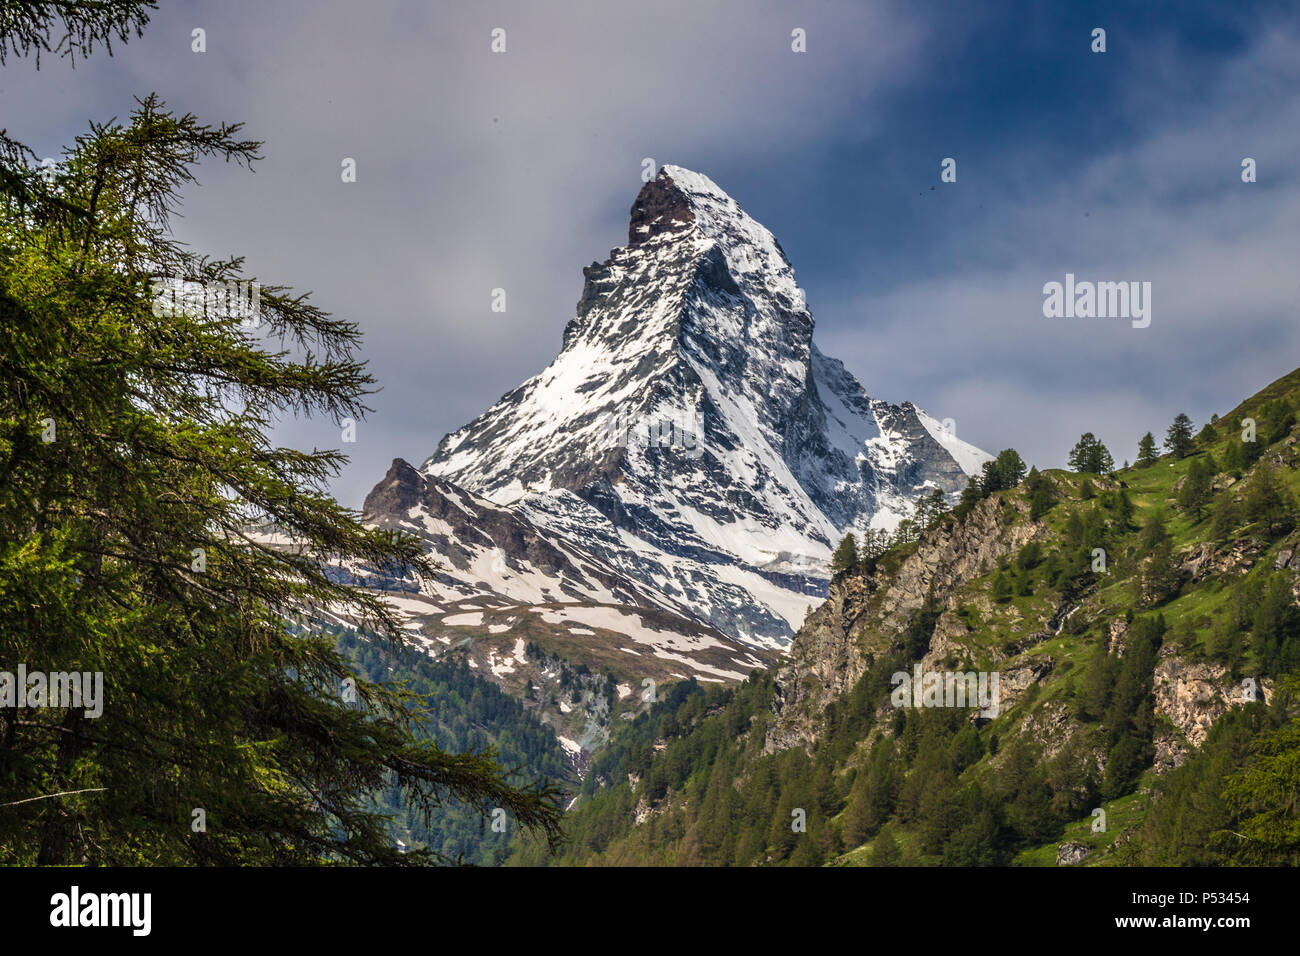 The Matterhorn as seen from Zermatt Stock Photo